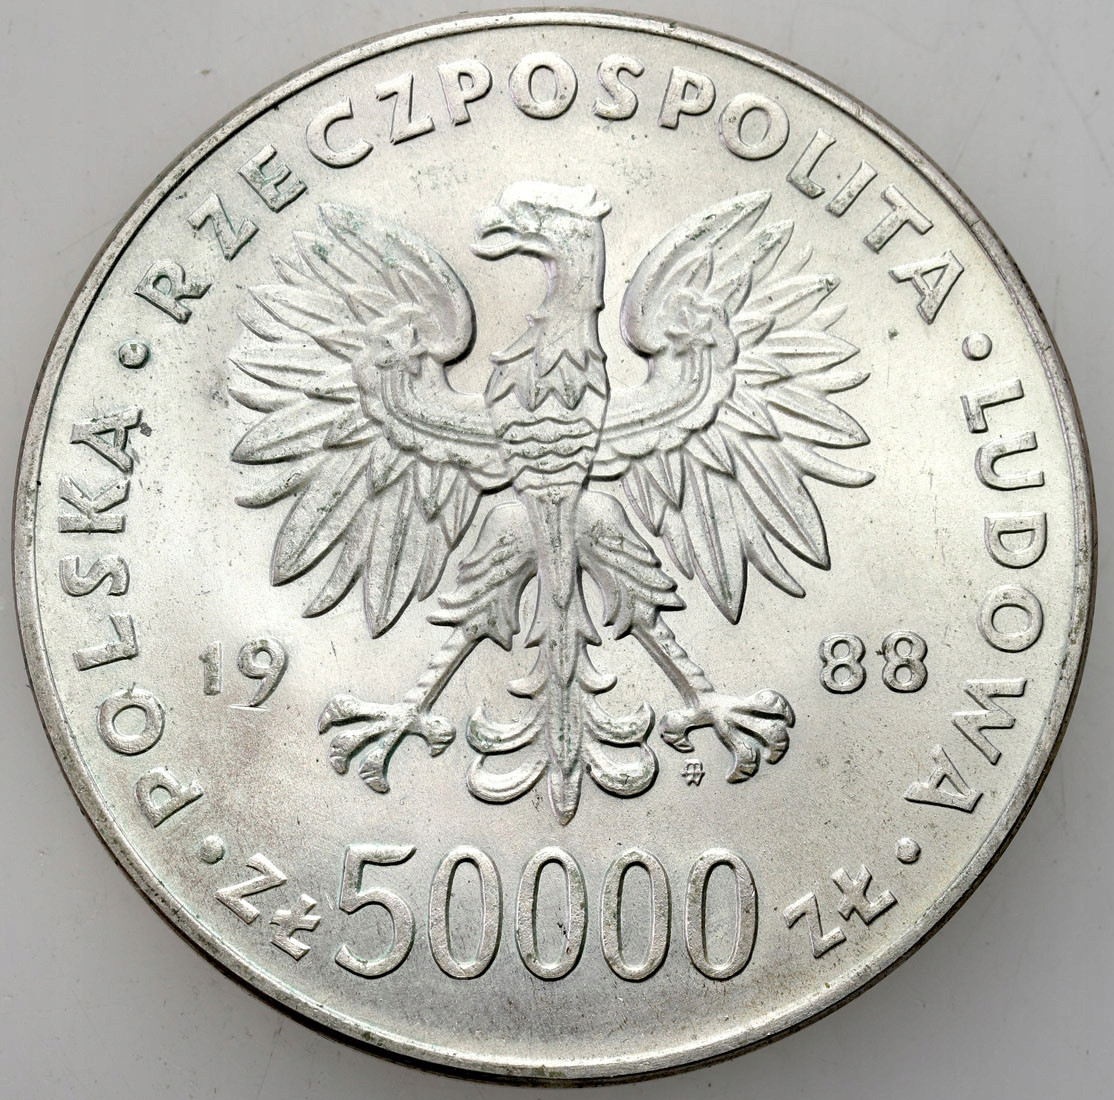 50.000 złotych 1988 Józef Piłsudski – SREBRO